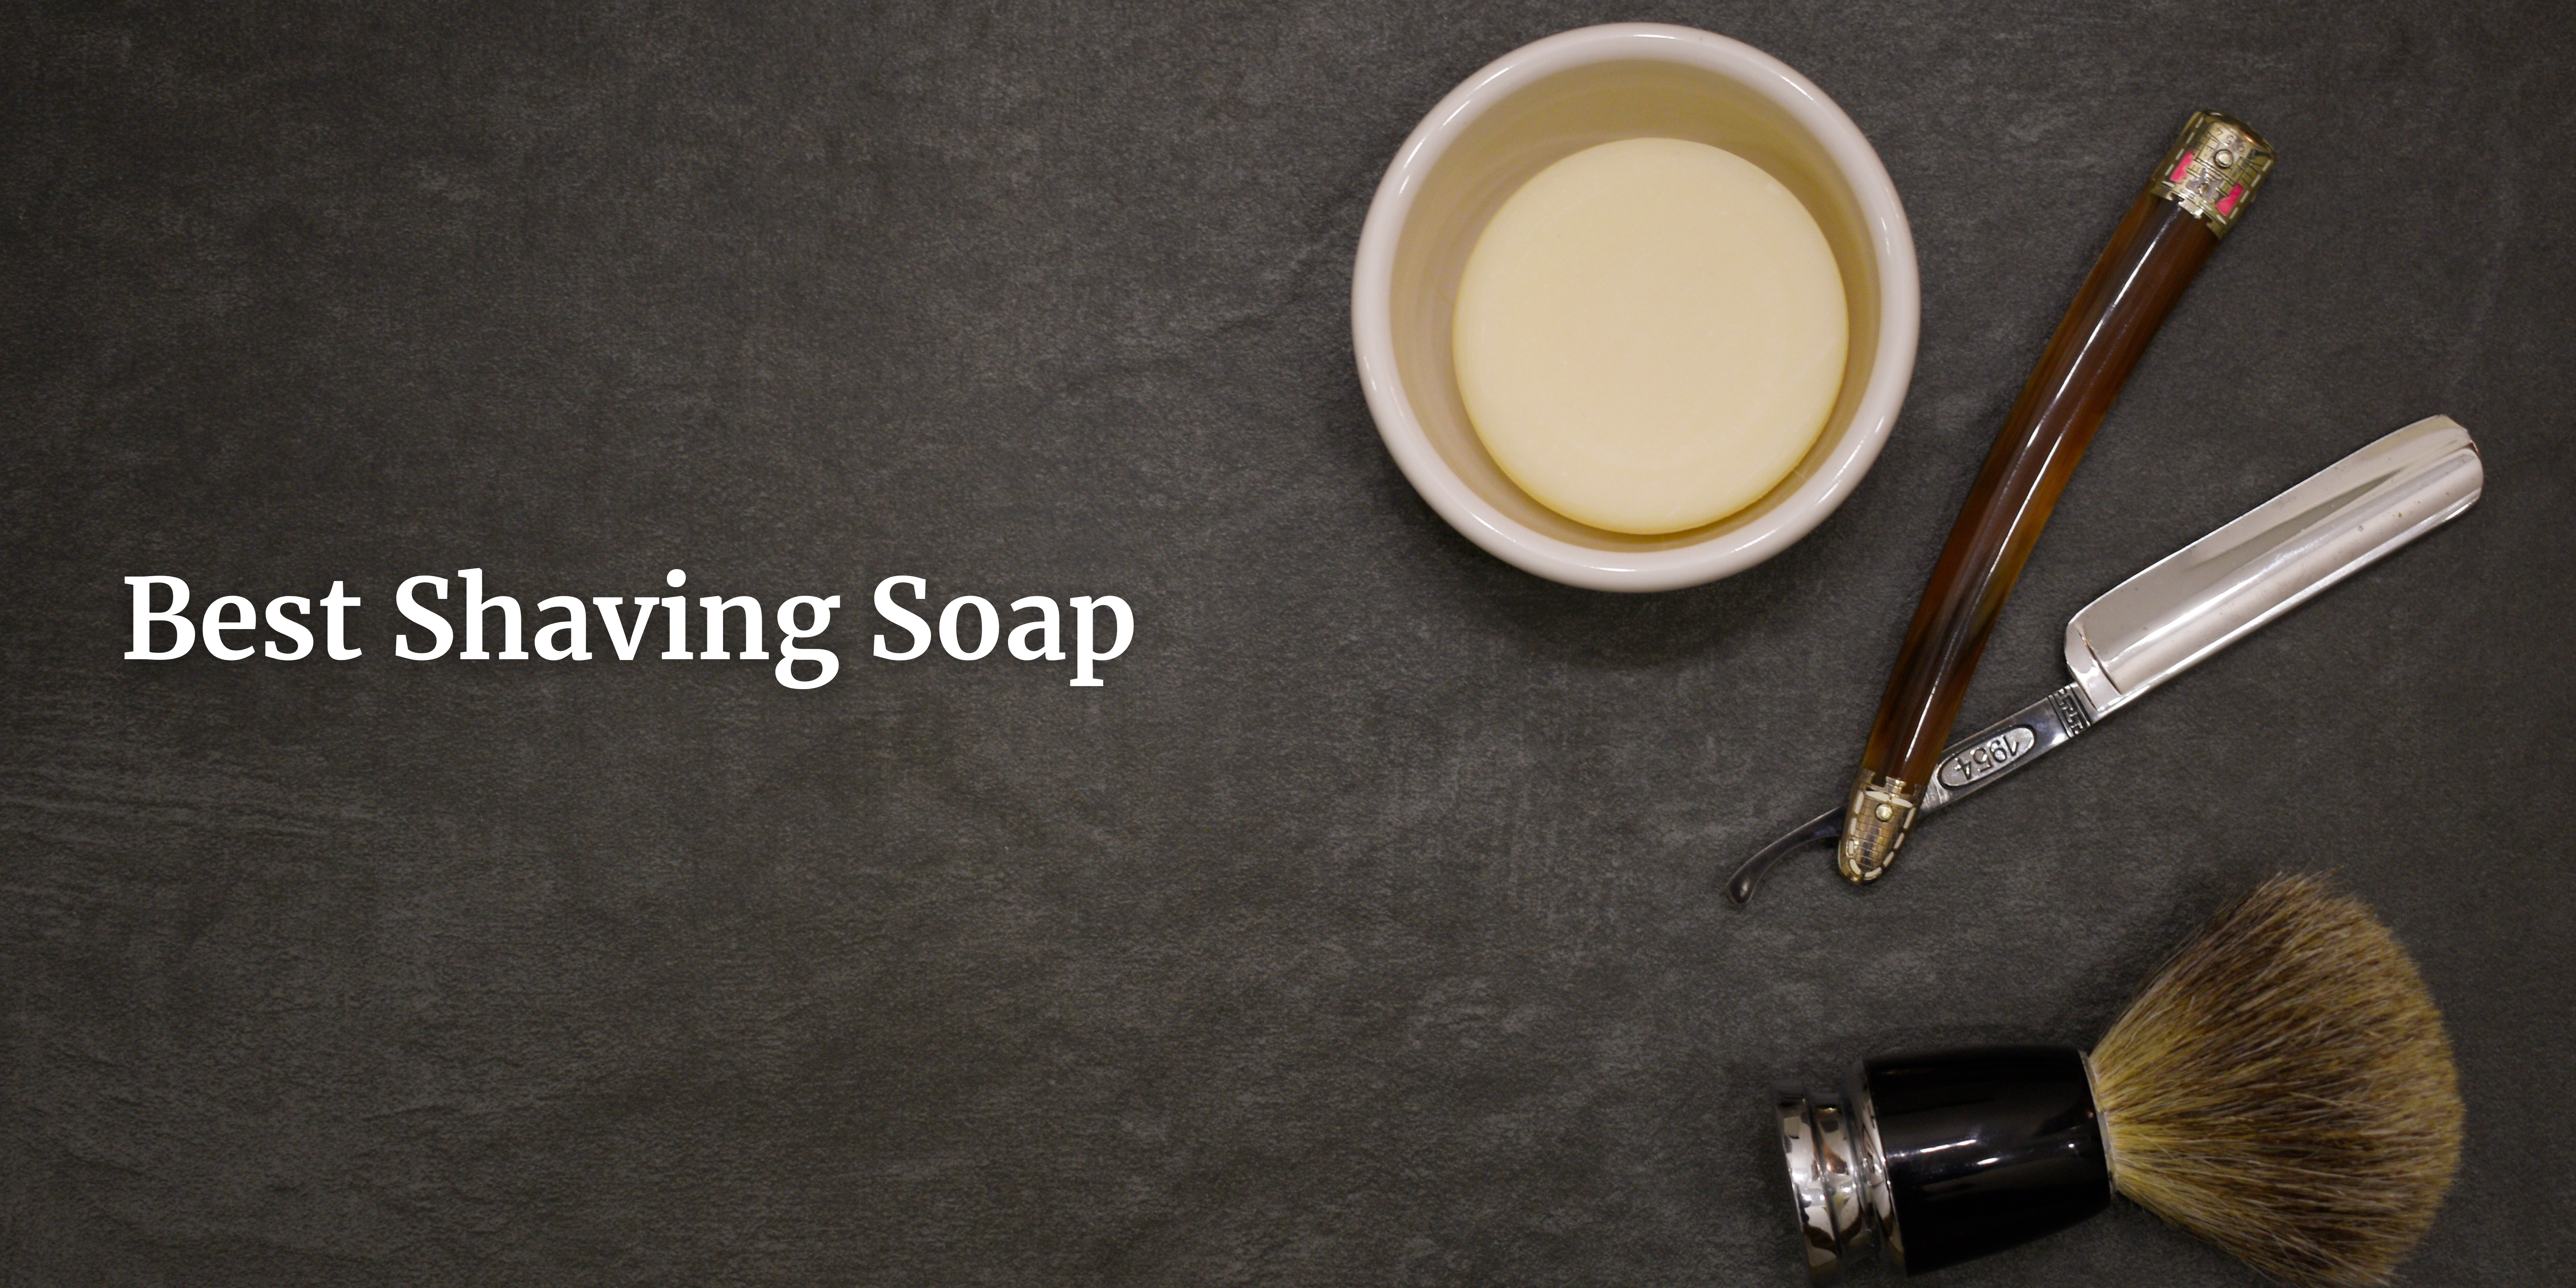 shaving soap in USA